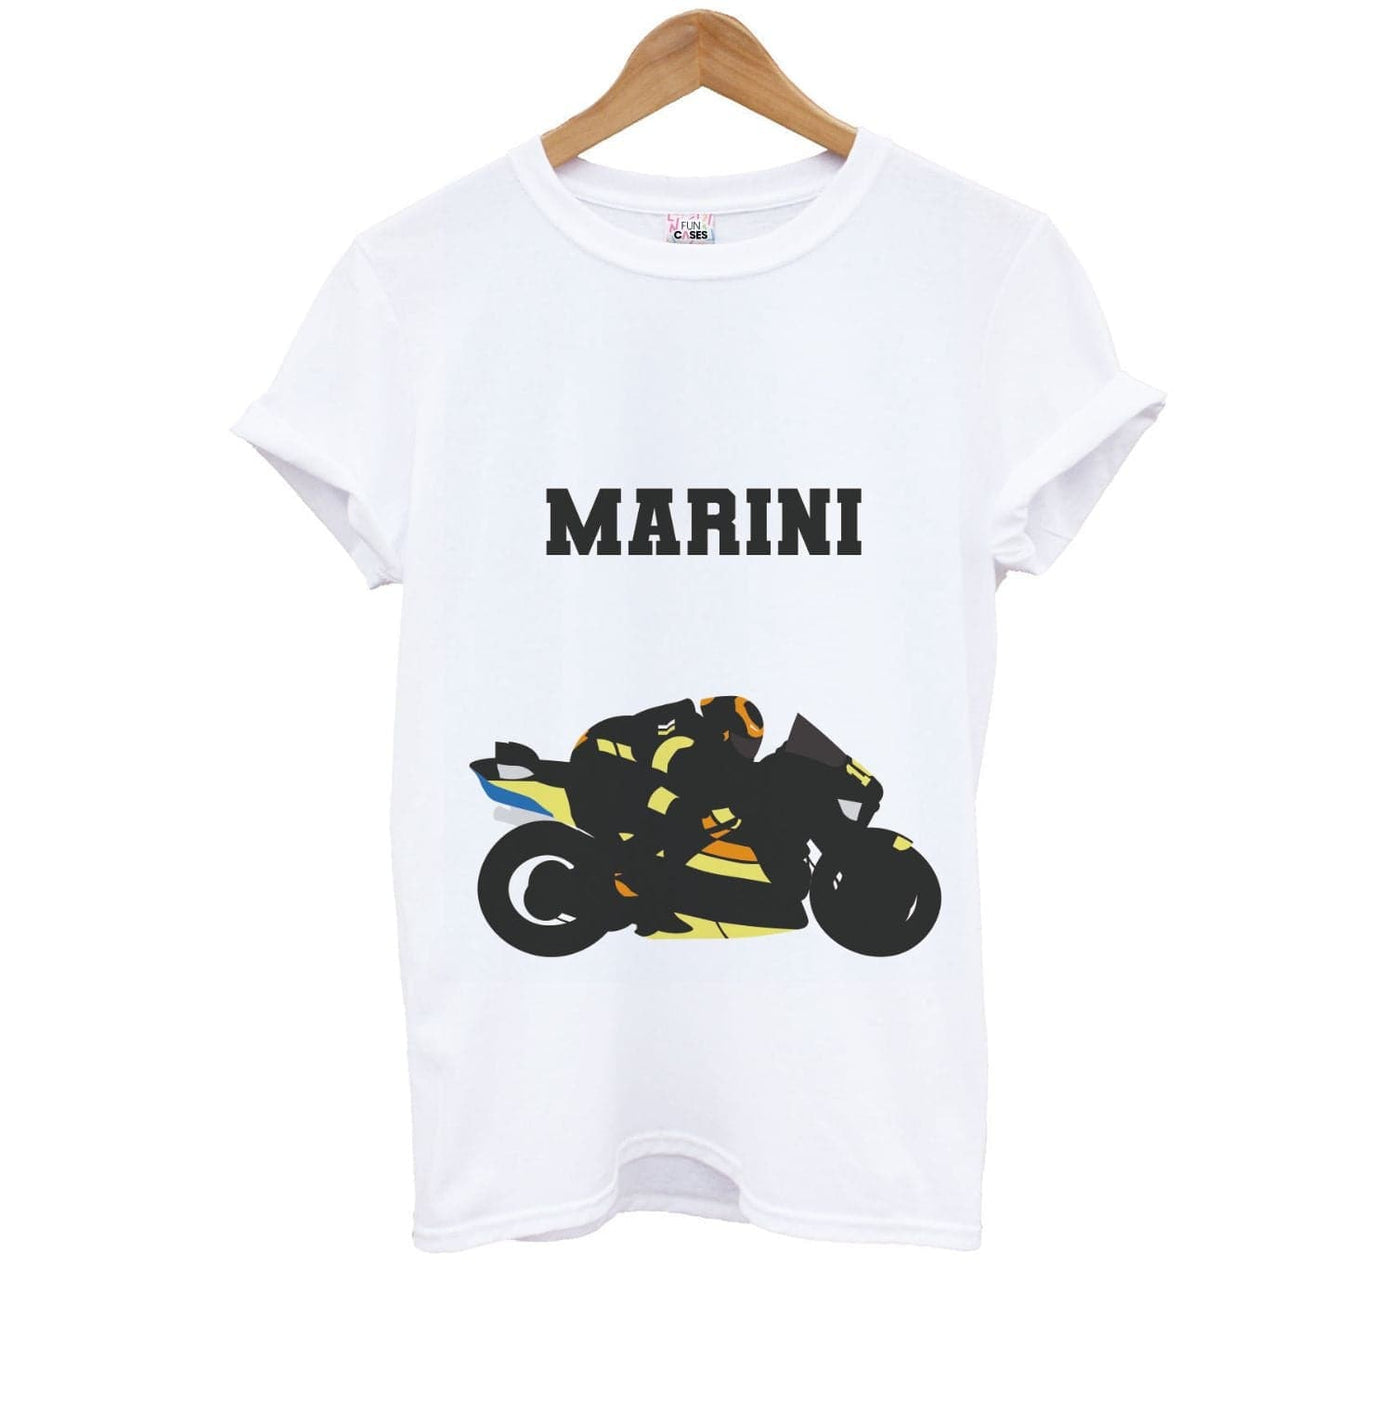 Marini - Moto GP Kids T-Shirt